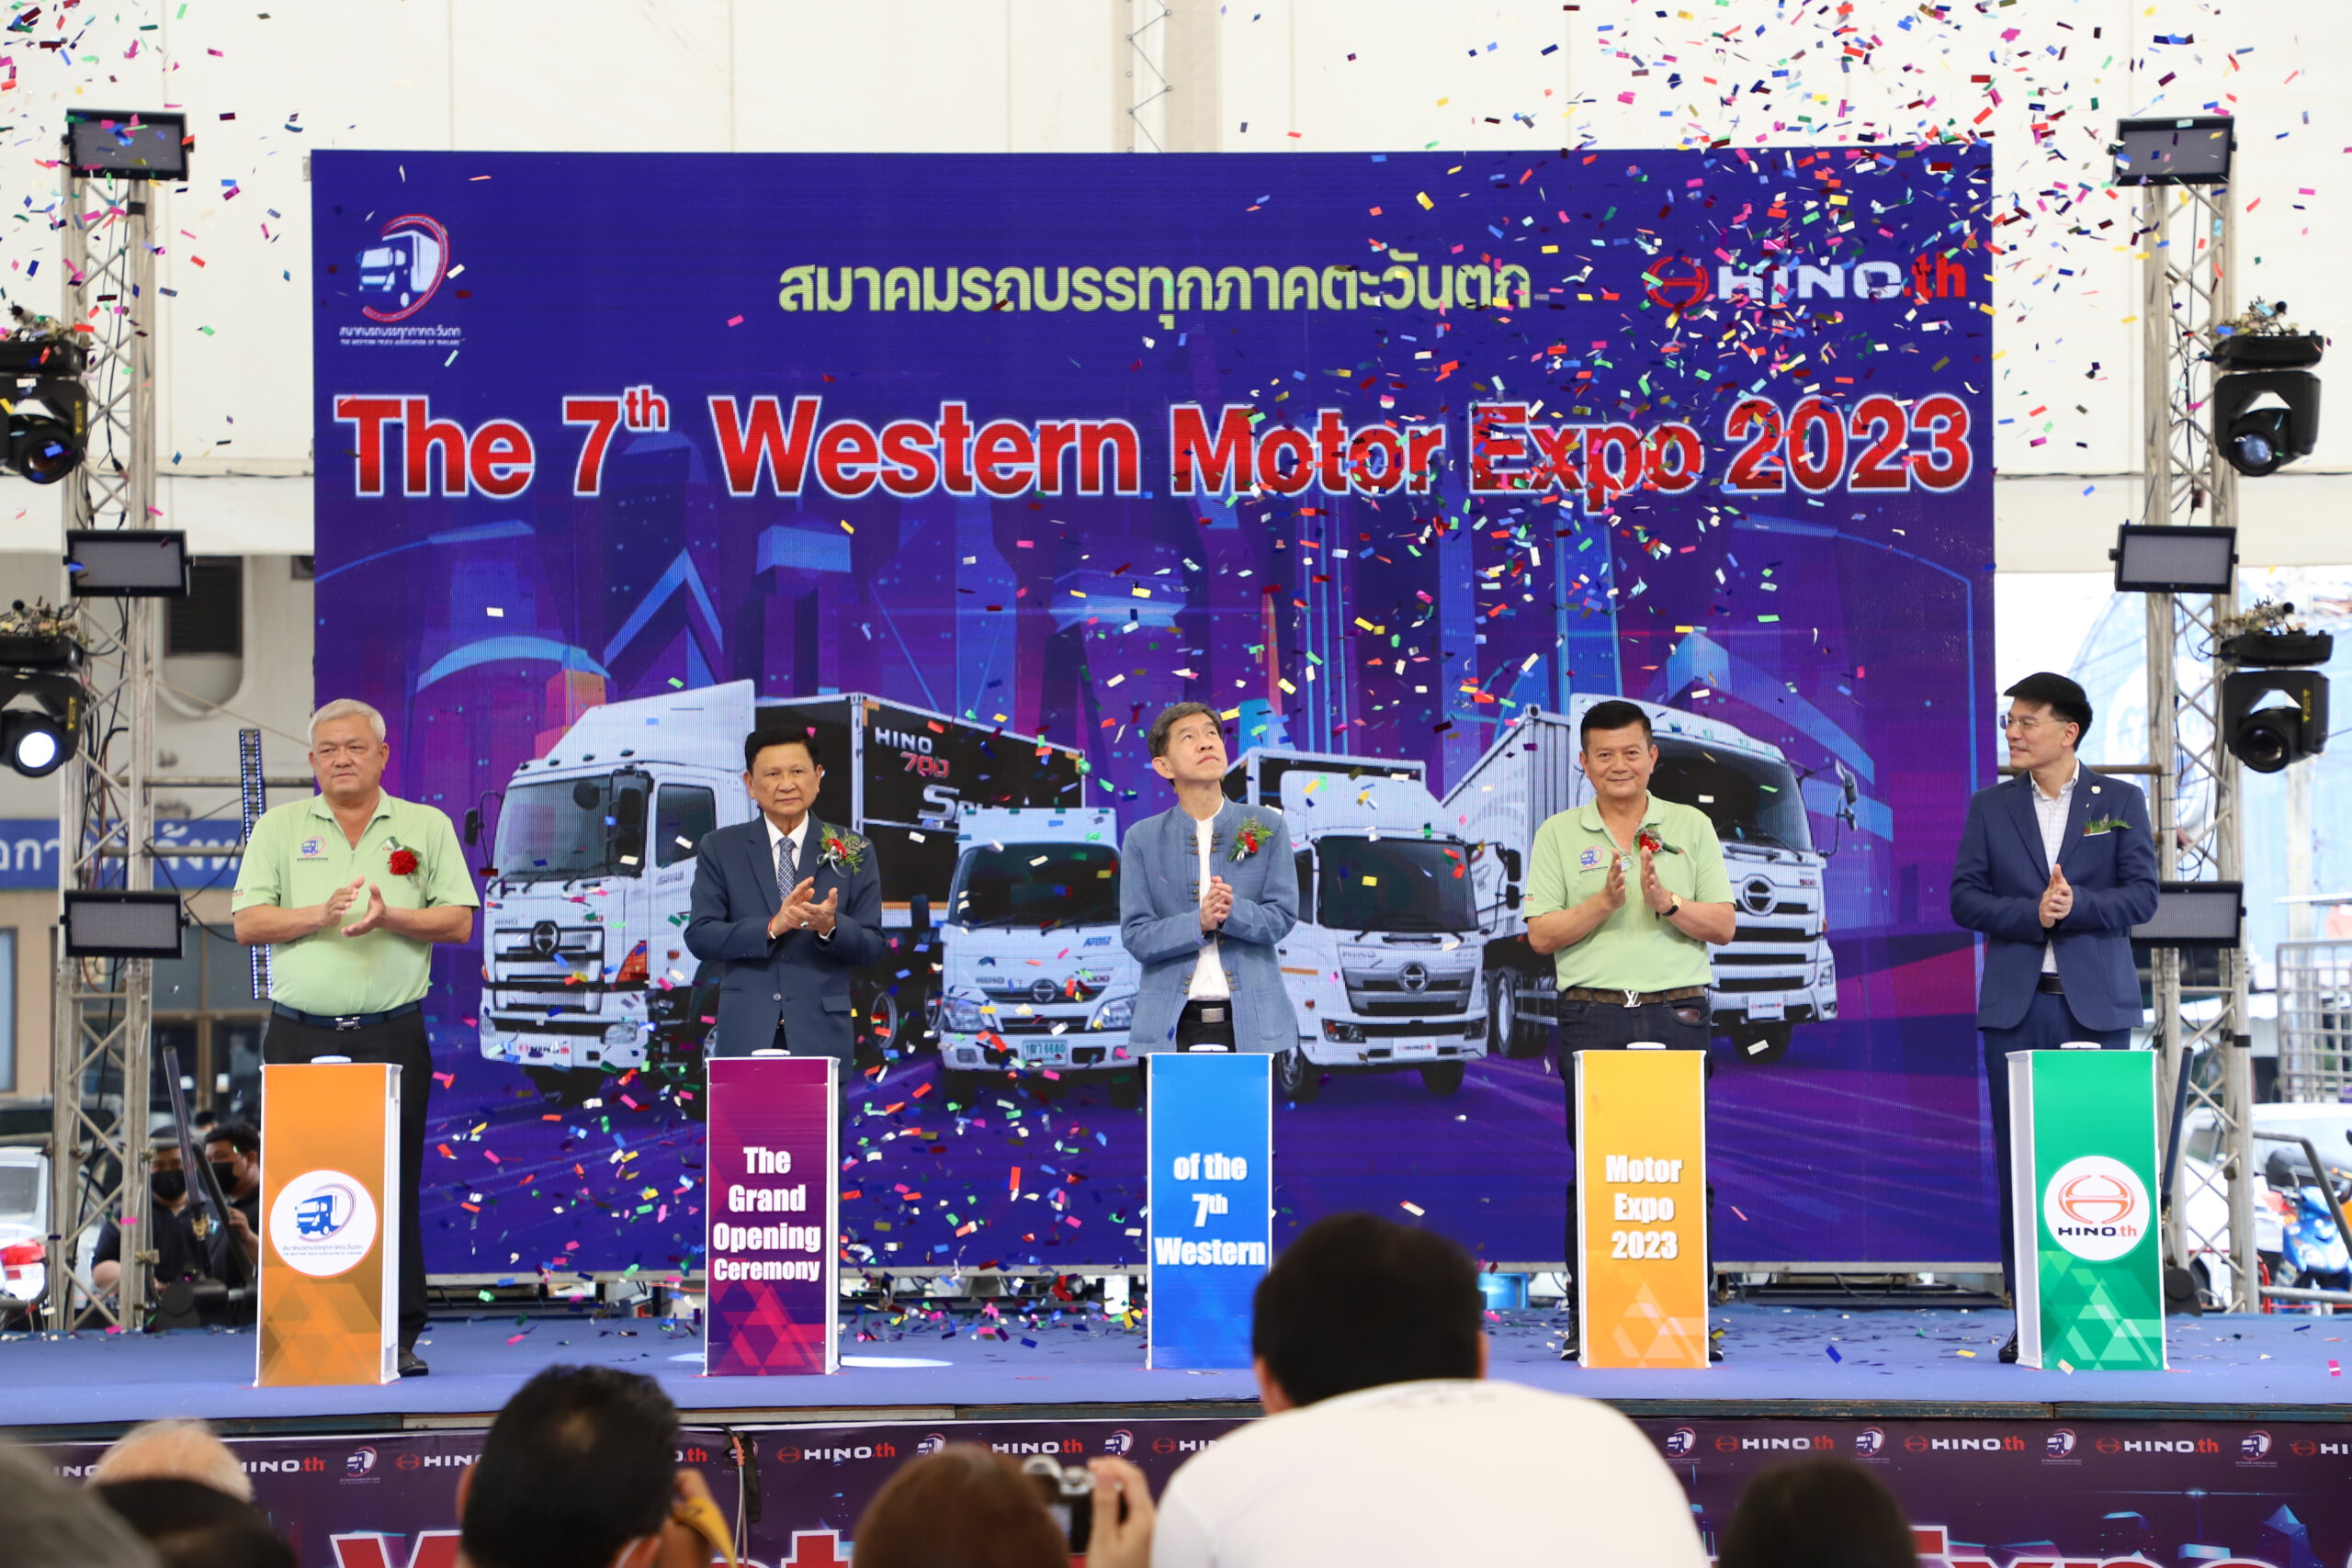 สมาคมรถบรรทุกภาคตะวันตกจัดงานประชุมใหญ่สามัญประจำปี 2565 The 7th Western Motor Expo 2023